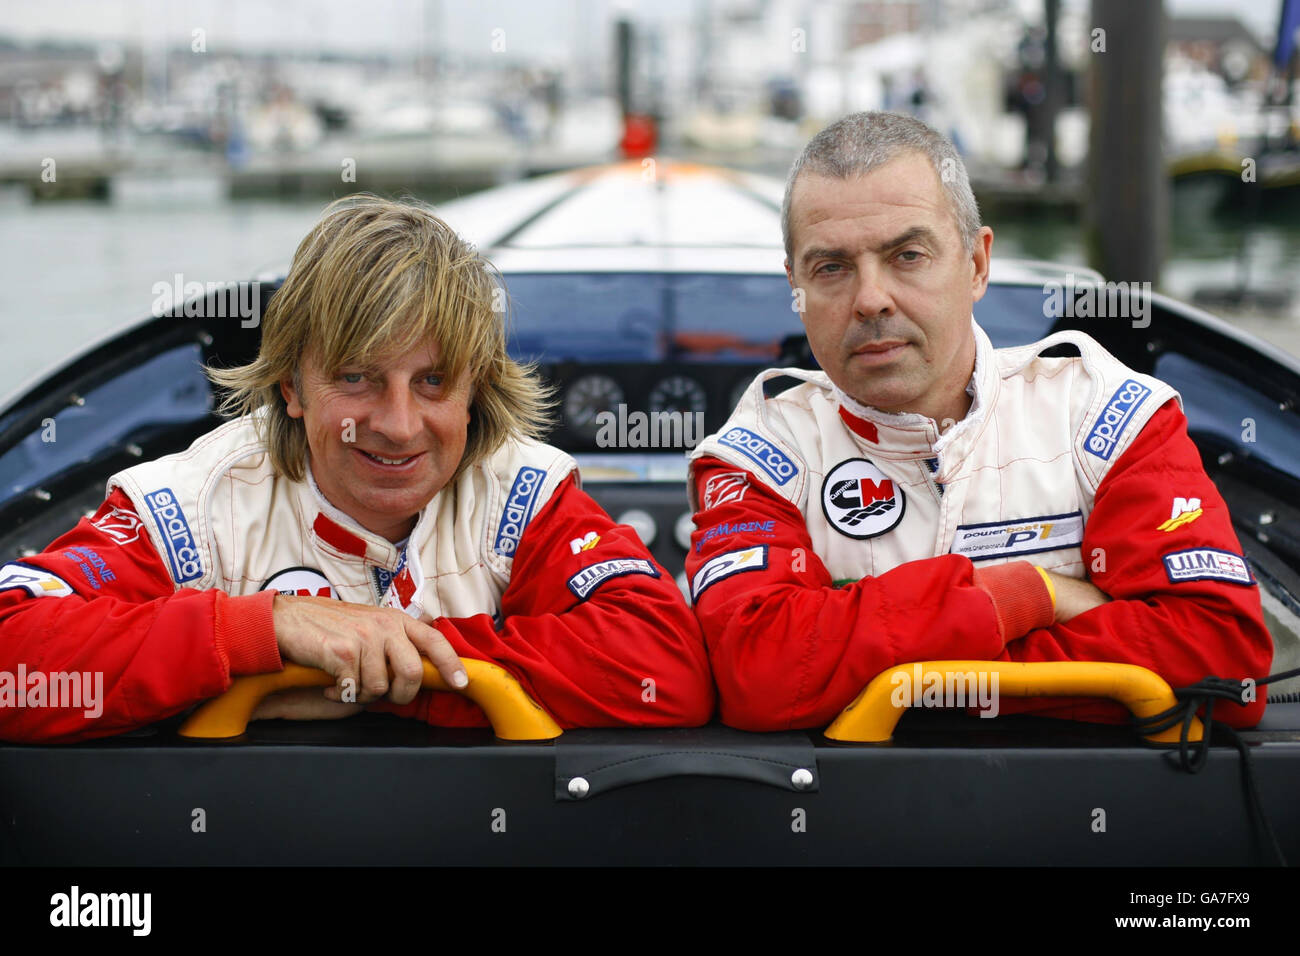 Foto. Drew Langdon (links) an Bord seines P1-Motorbootes Buzzi Bullet III mit seinem Co-Piloten Jan Falkowski auf dem Solent am 23/08/2007 vor dem britischen Grand Prix of the Sea. Die Veranstaltung ist Teil der P1 Powerboat Weltmeisterschaft. Stockfoto